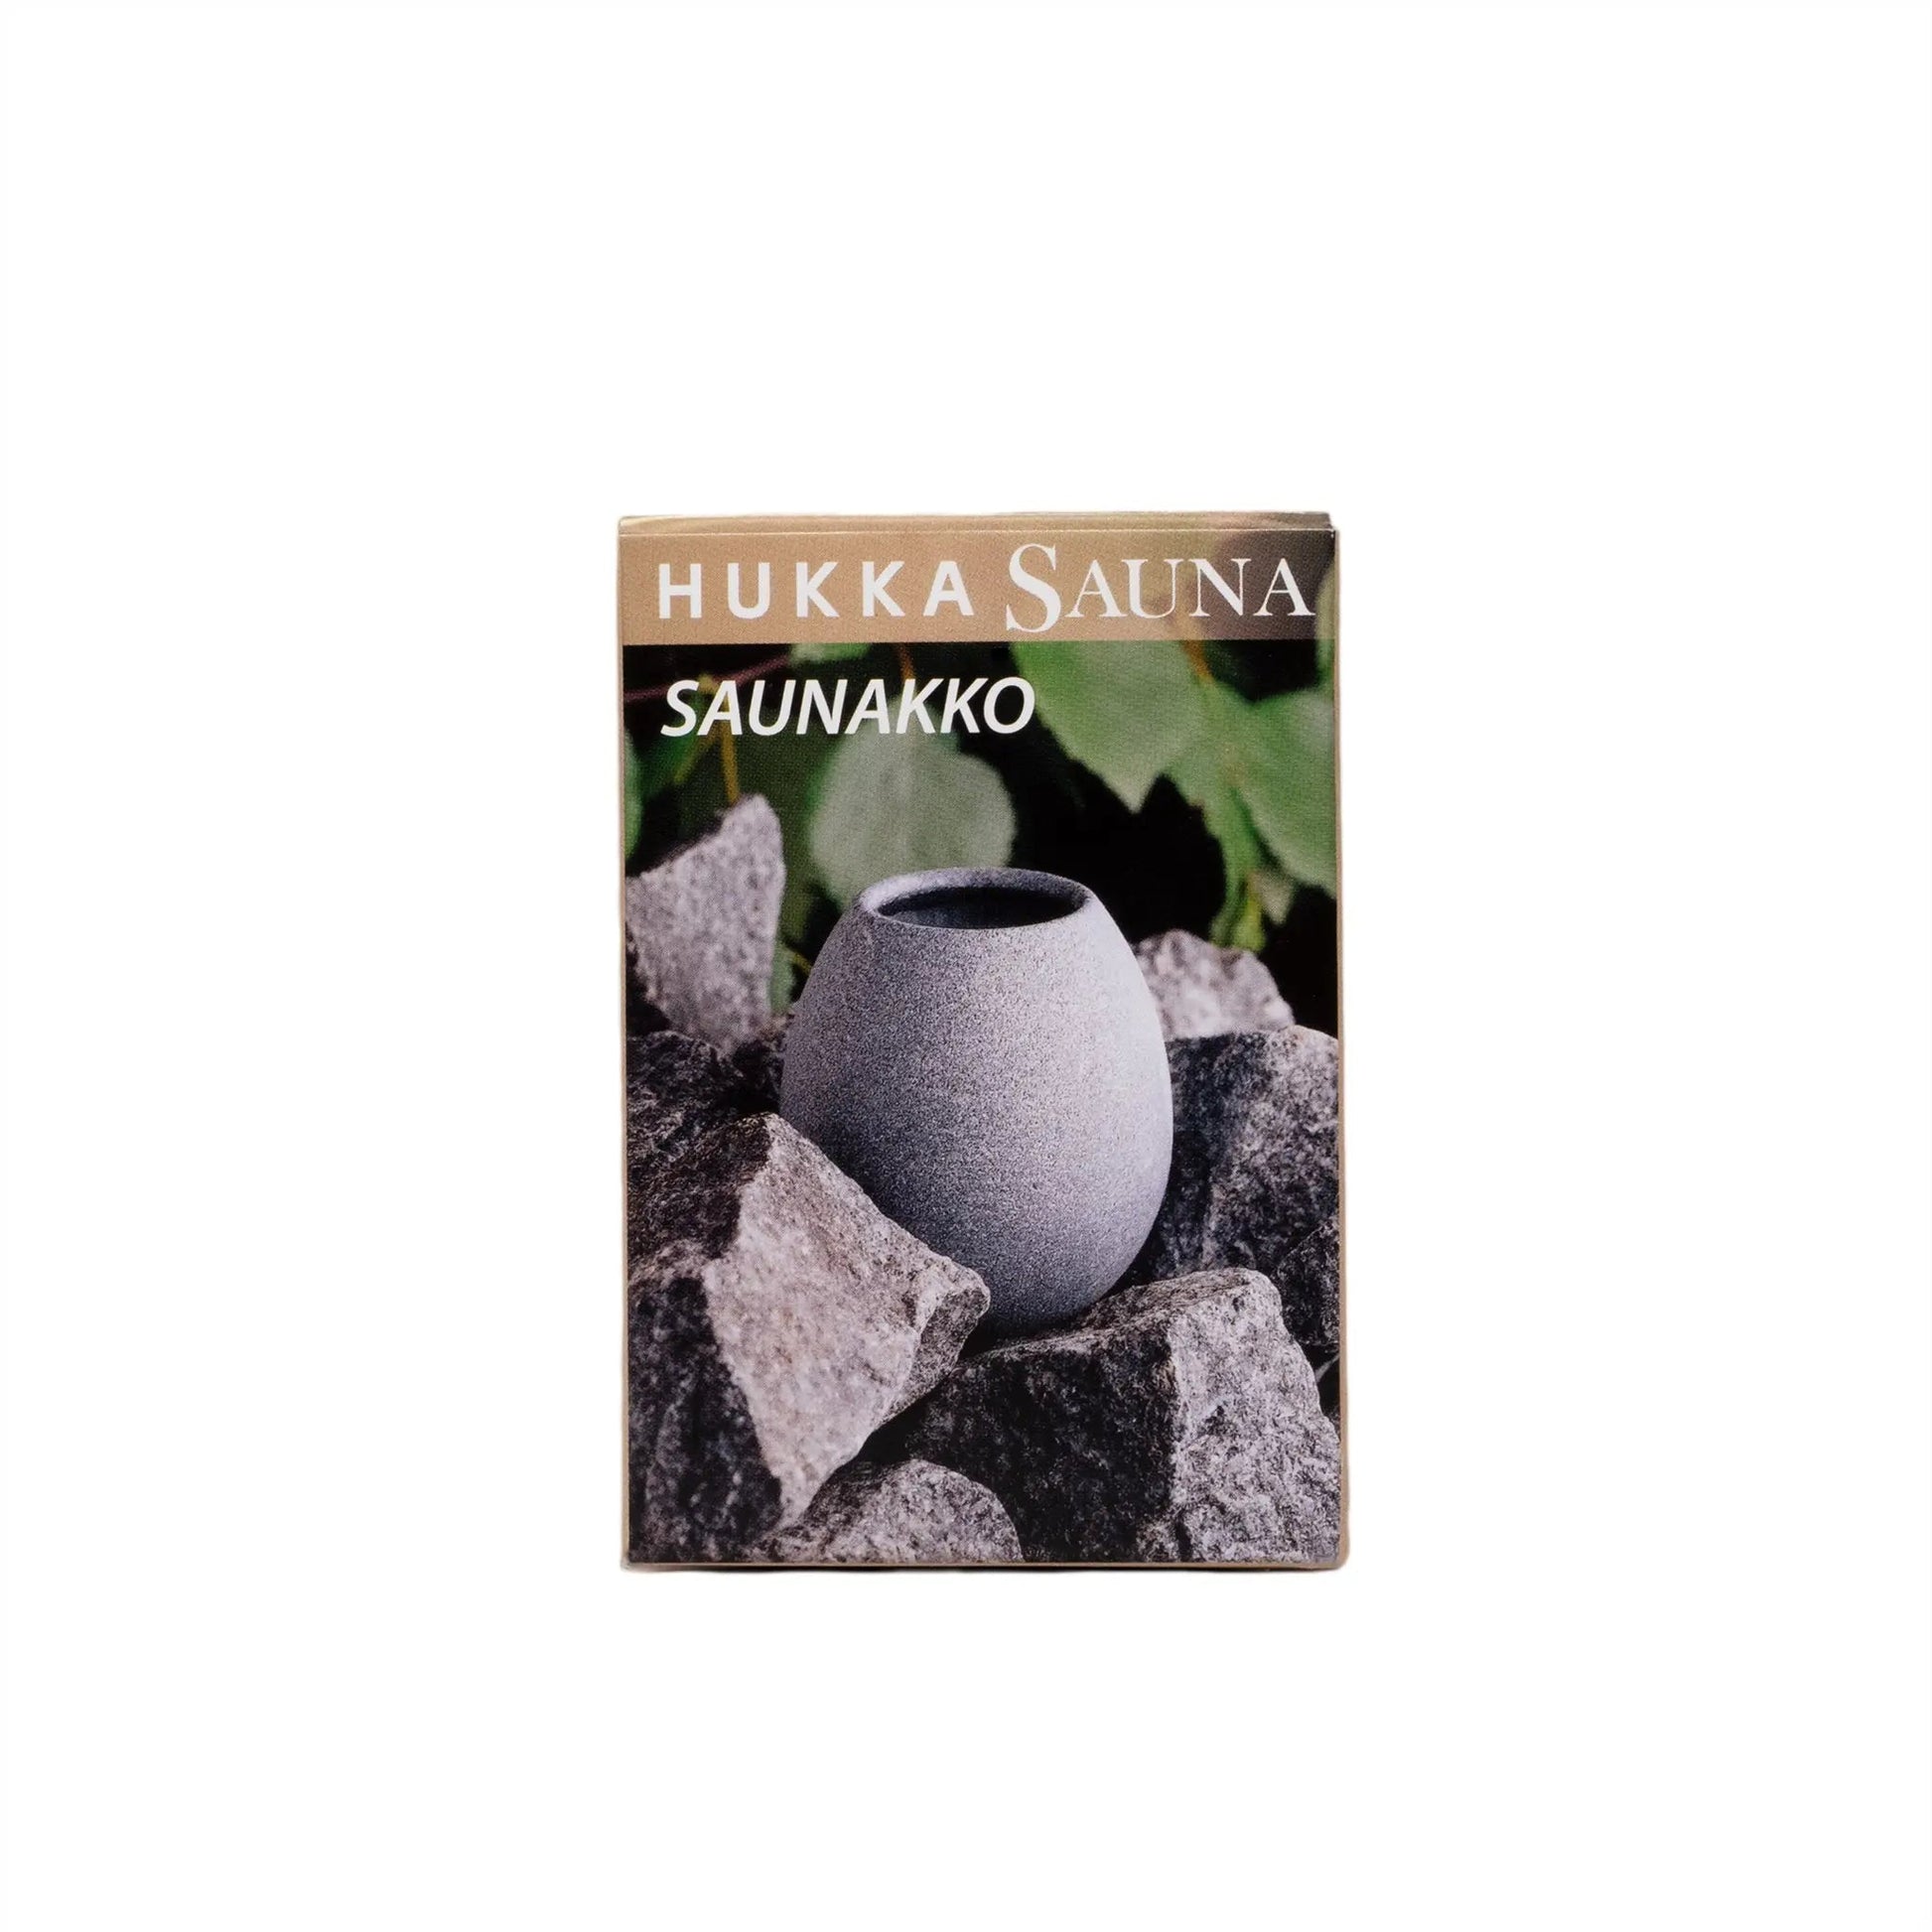 Finnish Soapstone Sauna Scent/Oil Diffuser - Saunakko Soapstone Scent Diffuser | Finnmark Sauna